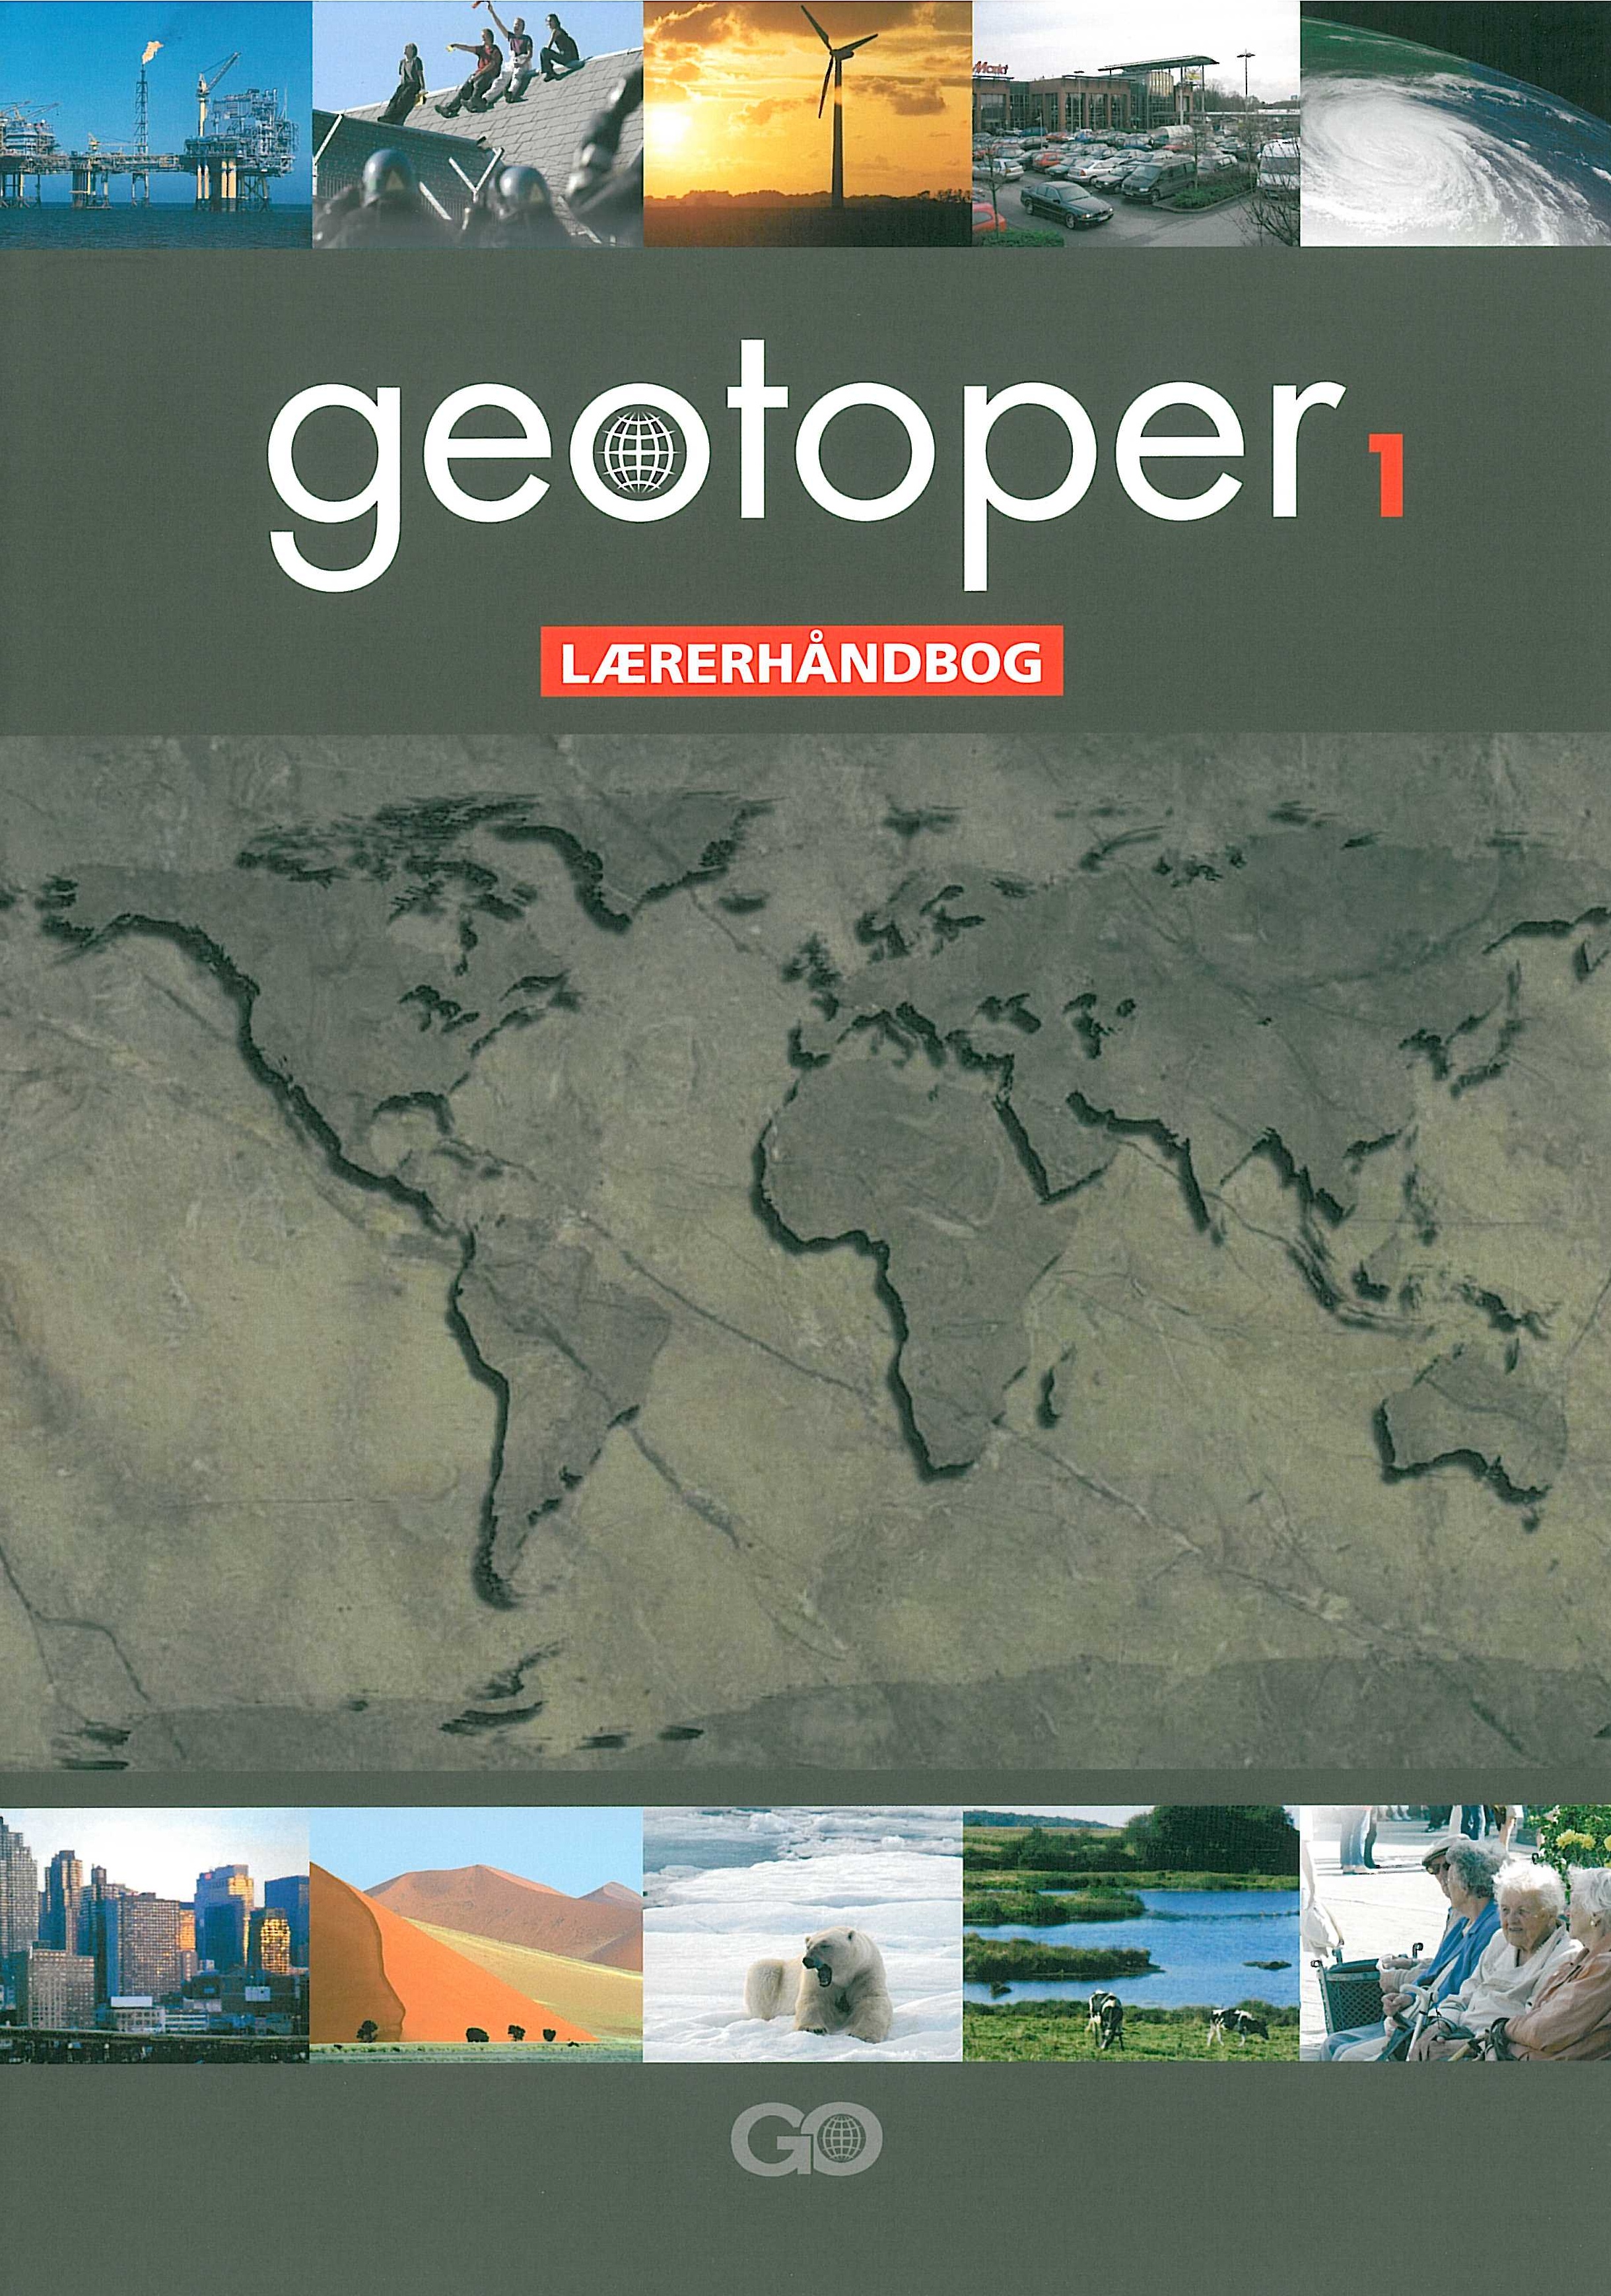 Geotoper 1 Lærerhåndbog er en del af et undervisningssystem til grundskolens undervisning i geografi i 7. til 9. klasse.